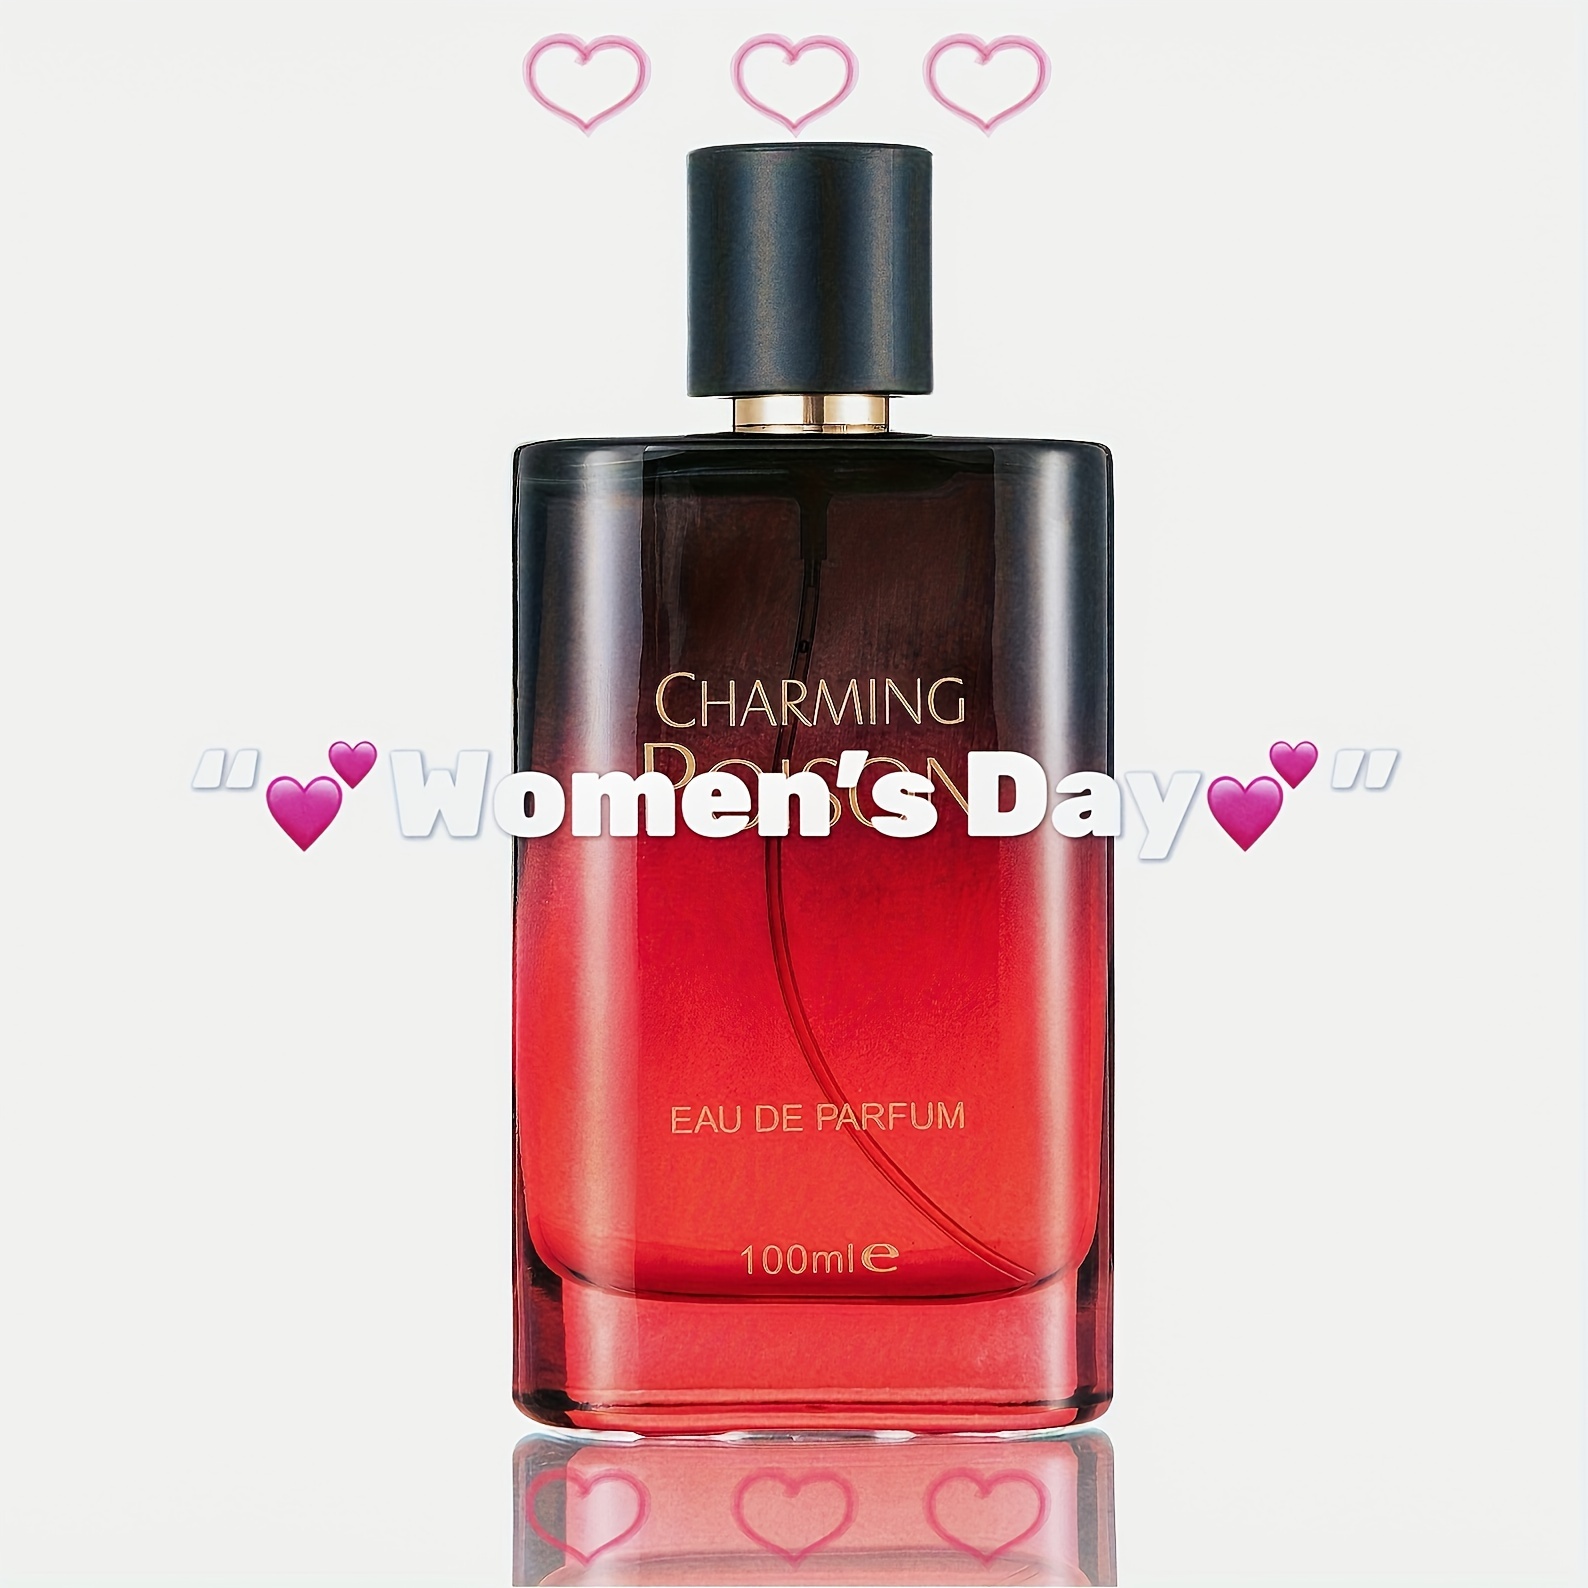 

Charming Grapefruit Scented Women's Perfume - Alcohol-based, Floral Notes, 100ml Eau De Parfum